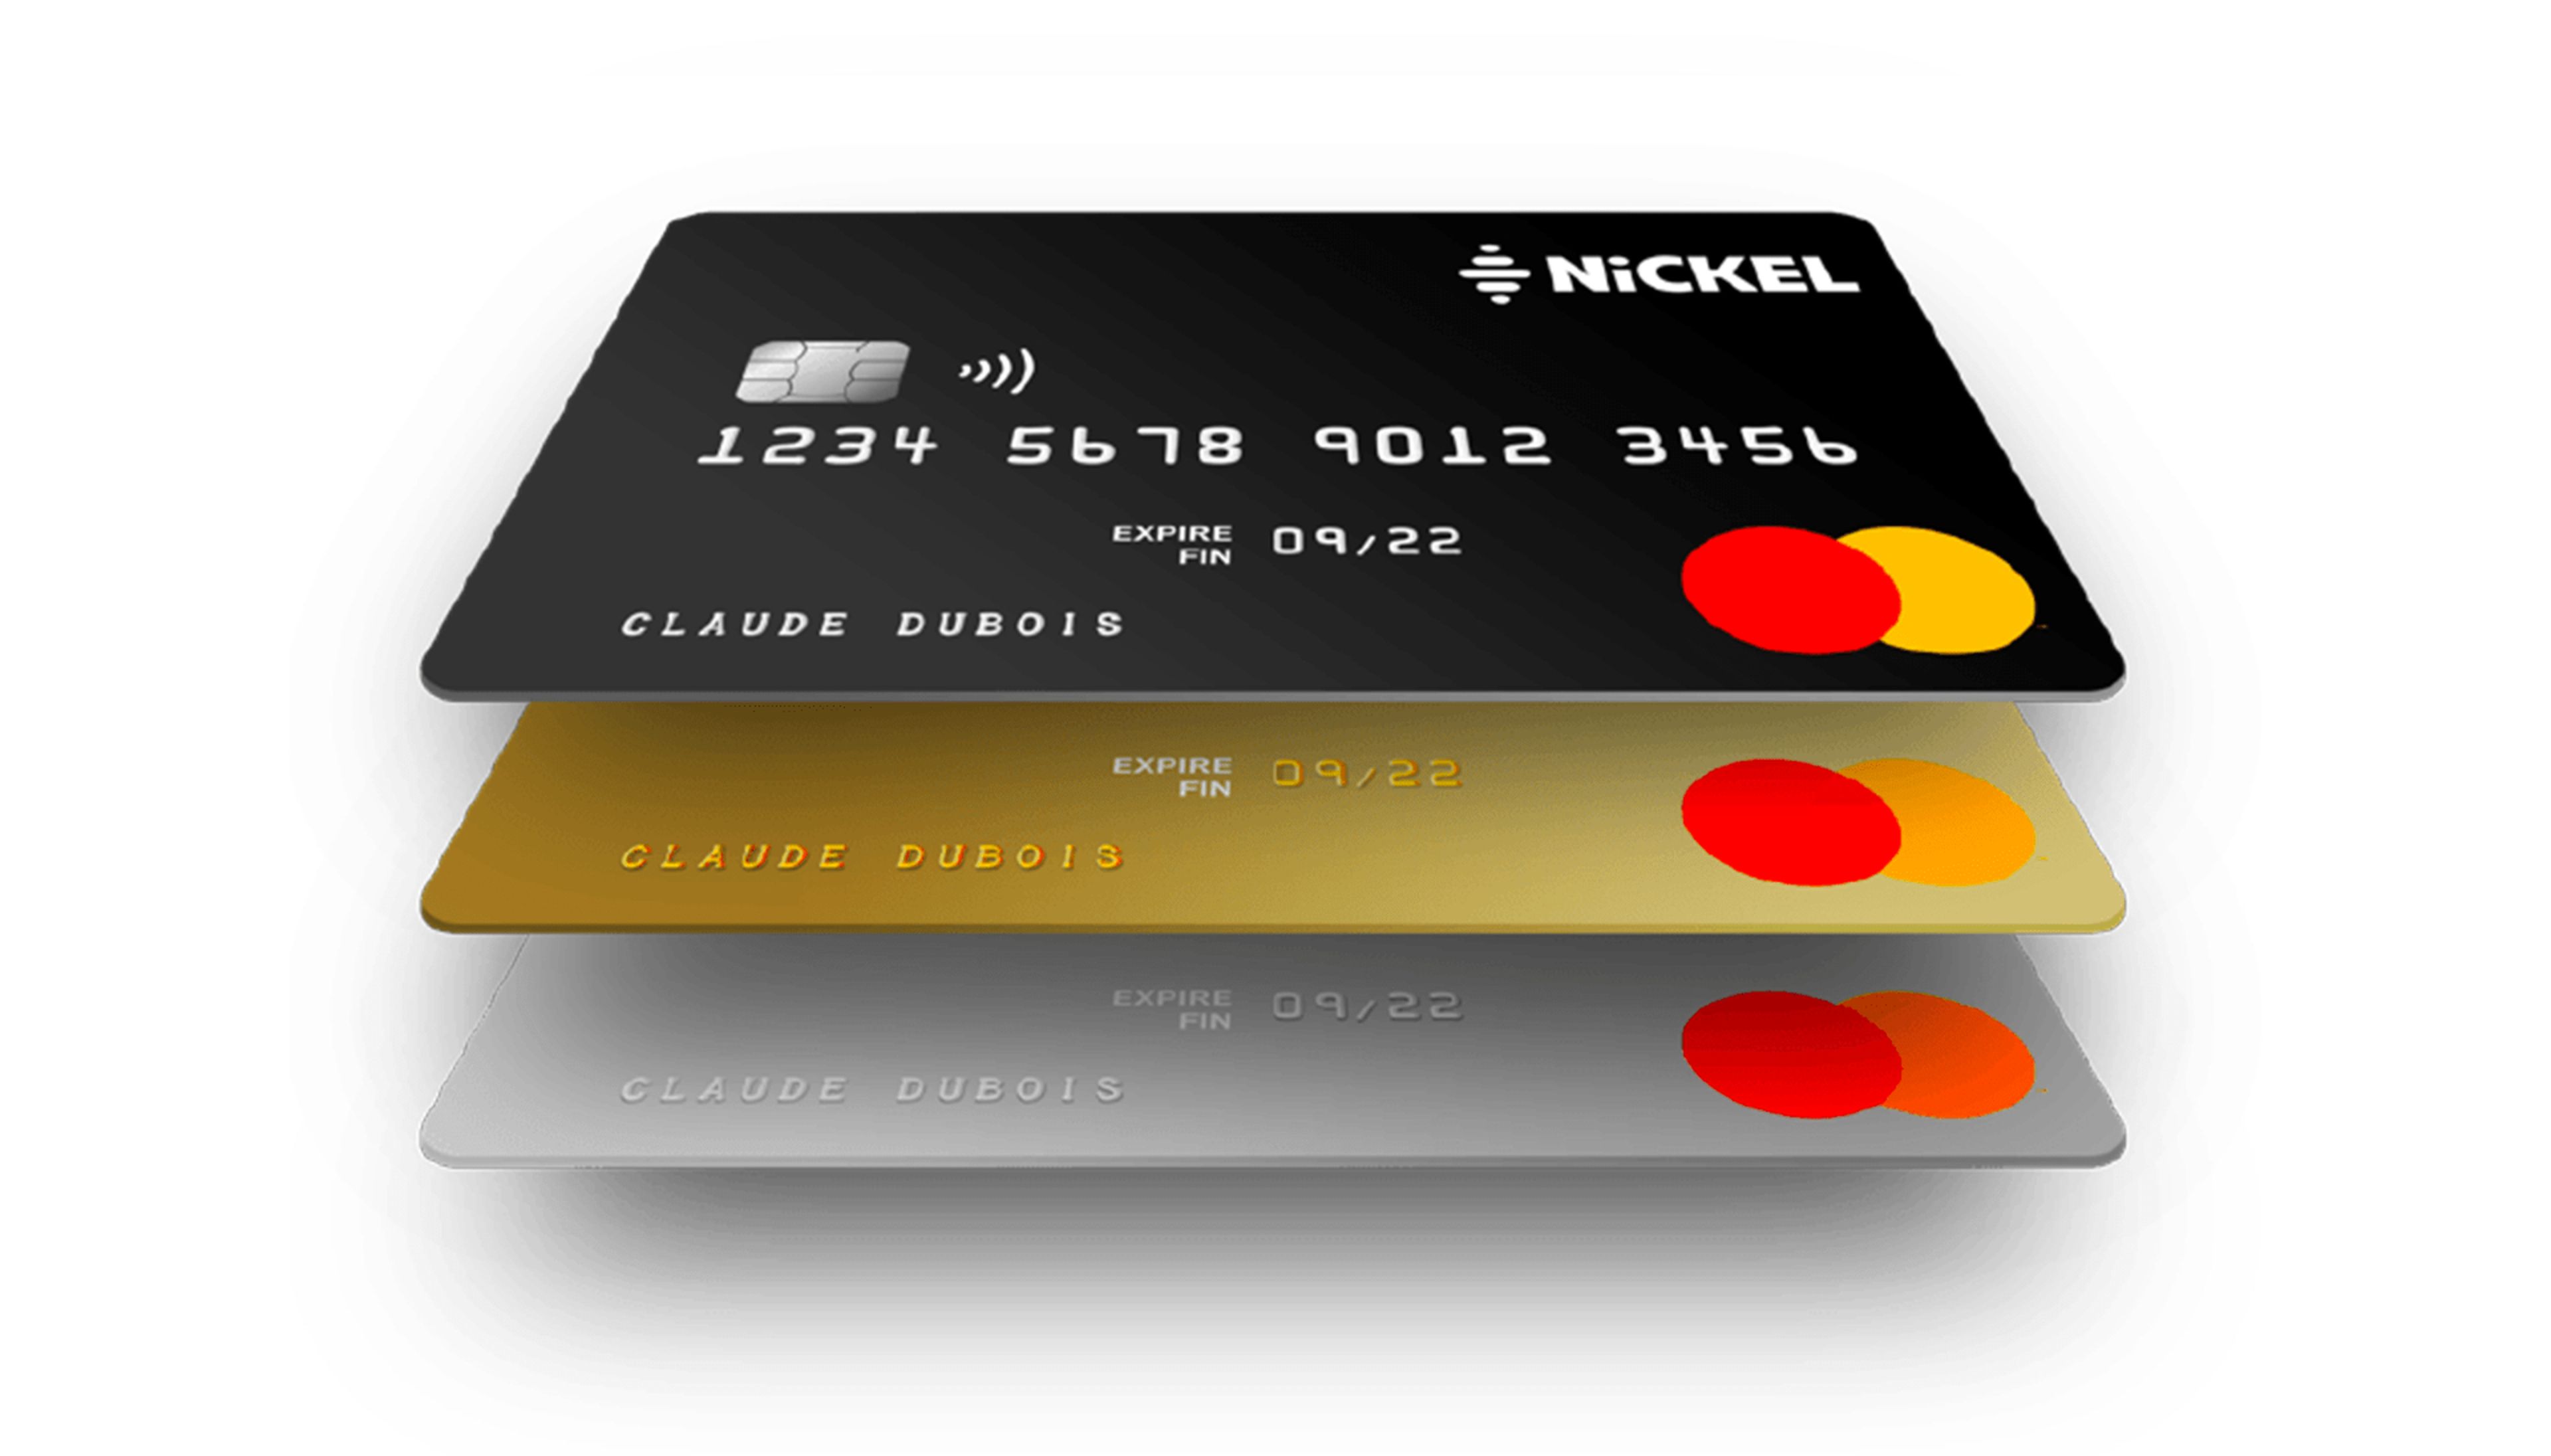 Tarjetas Mastercard de Nickel en Francia